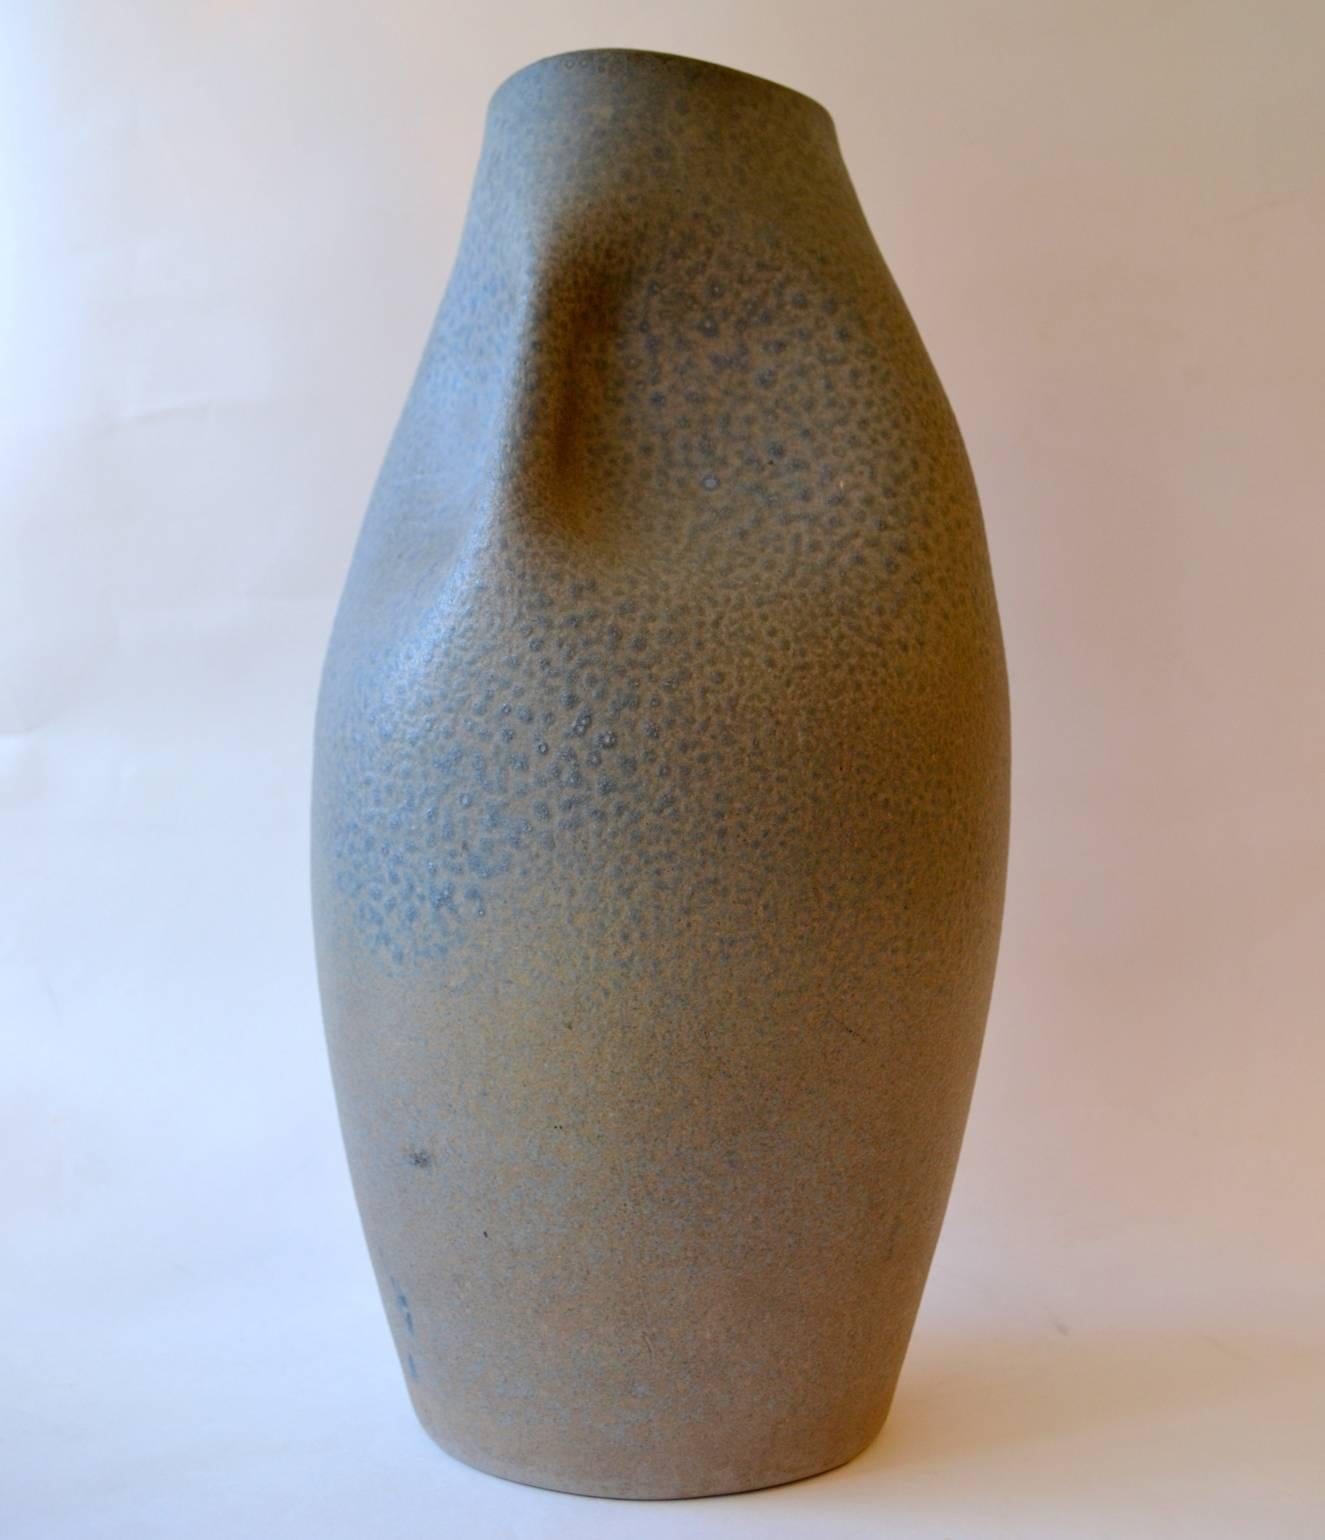 Grand vase sculptural jeté et manipulé à la main avec une subtile glaçure bleue texturée, par Bernh Jak Gieriz, Adendorf, Bonn, Allemagne des années 1960. Le vase est idéal comme vase de sol ou quelque part dans la maison dans un coin oublié et